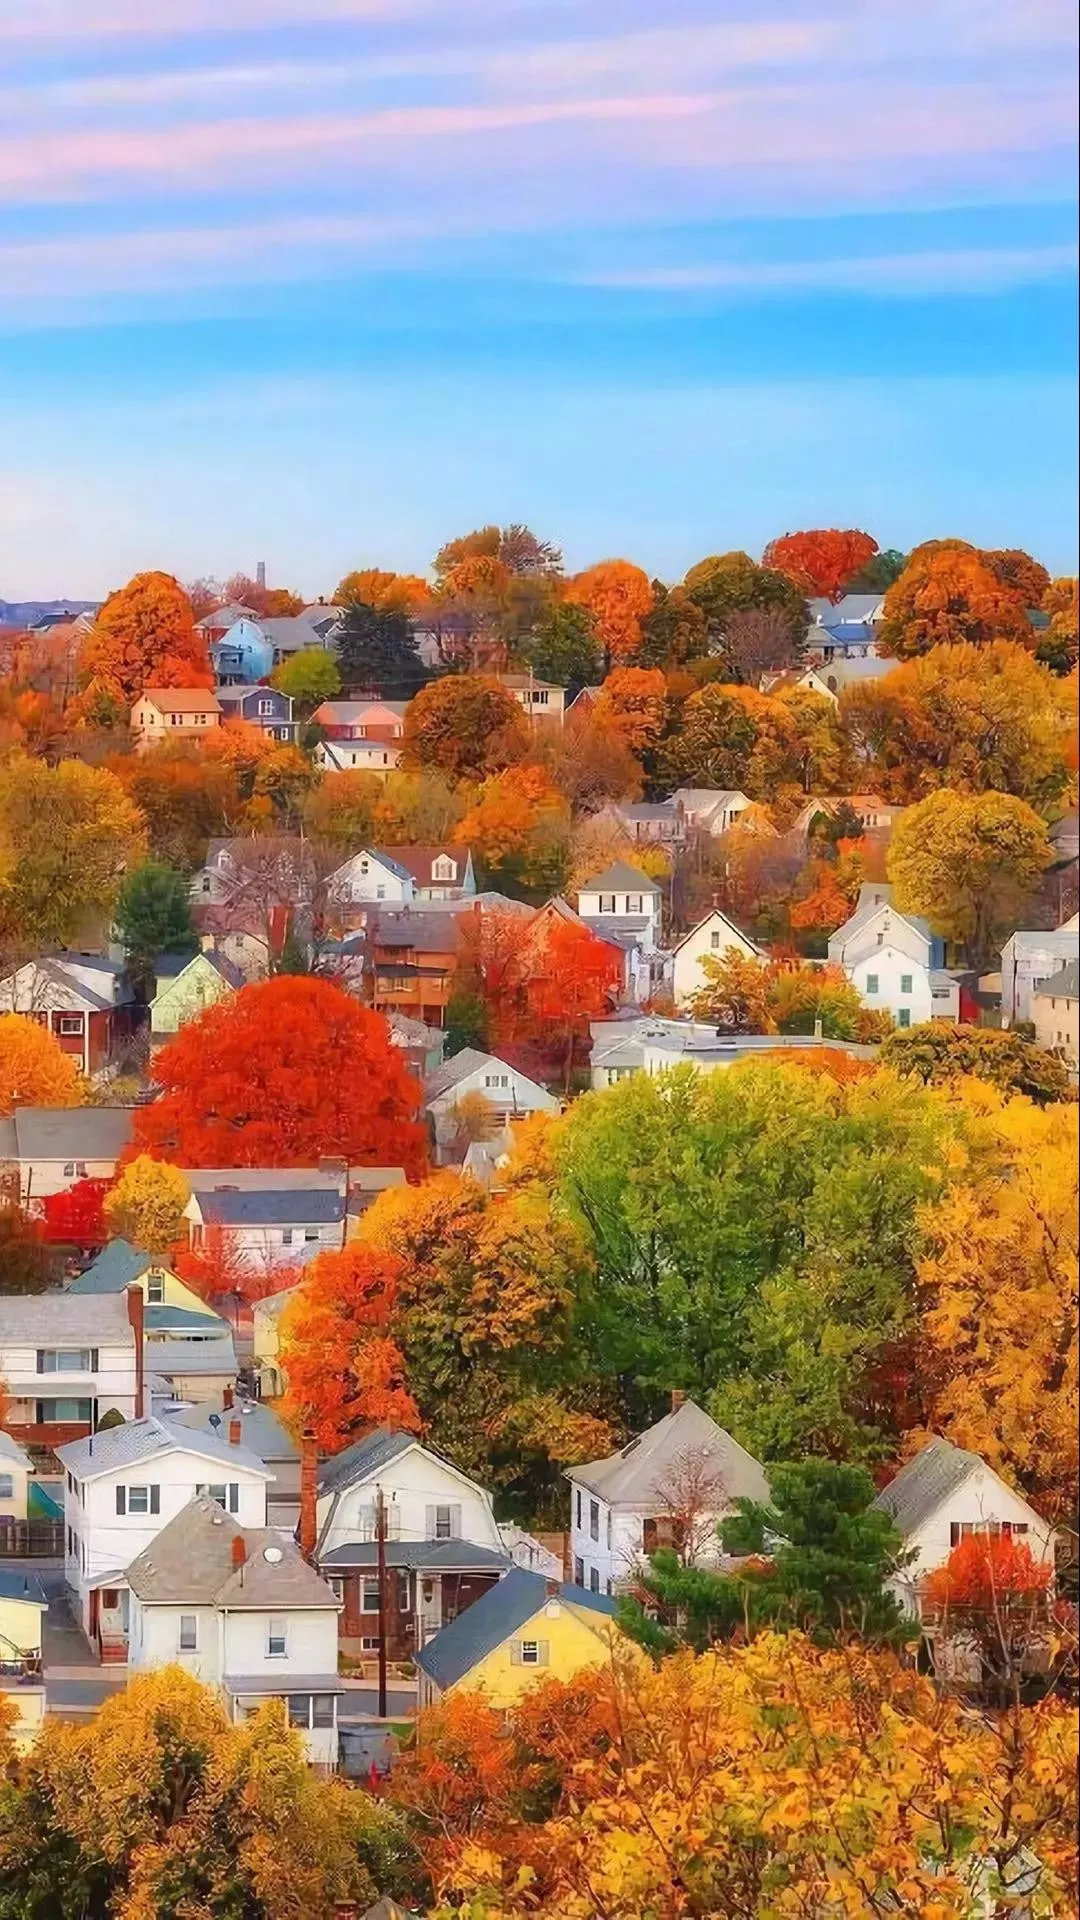 Mùa thu đã đến và bạn muốn tìm kiếm những hình ảnh đẹp nhất để trang trí cho điện thoại hay máy tính của mình? Những cảnh thiên nhiên trong mùa thu với sắc đỏ, vàng, cam đan xen cùng nhau tạo nên một bức tranh hoàn hảo, đạt đến đỉnh cao về cảm xúc và tinh tế.